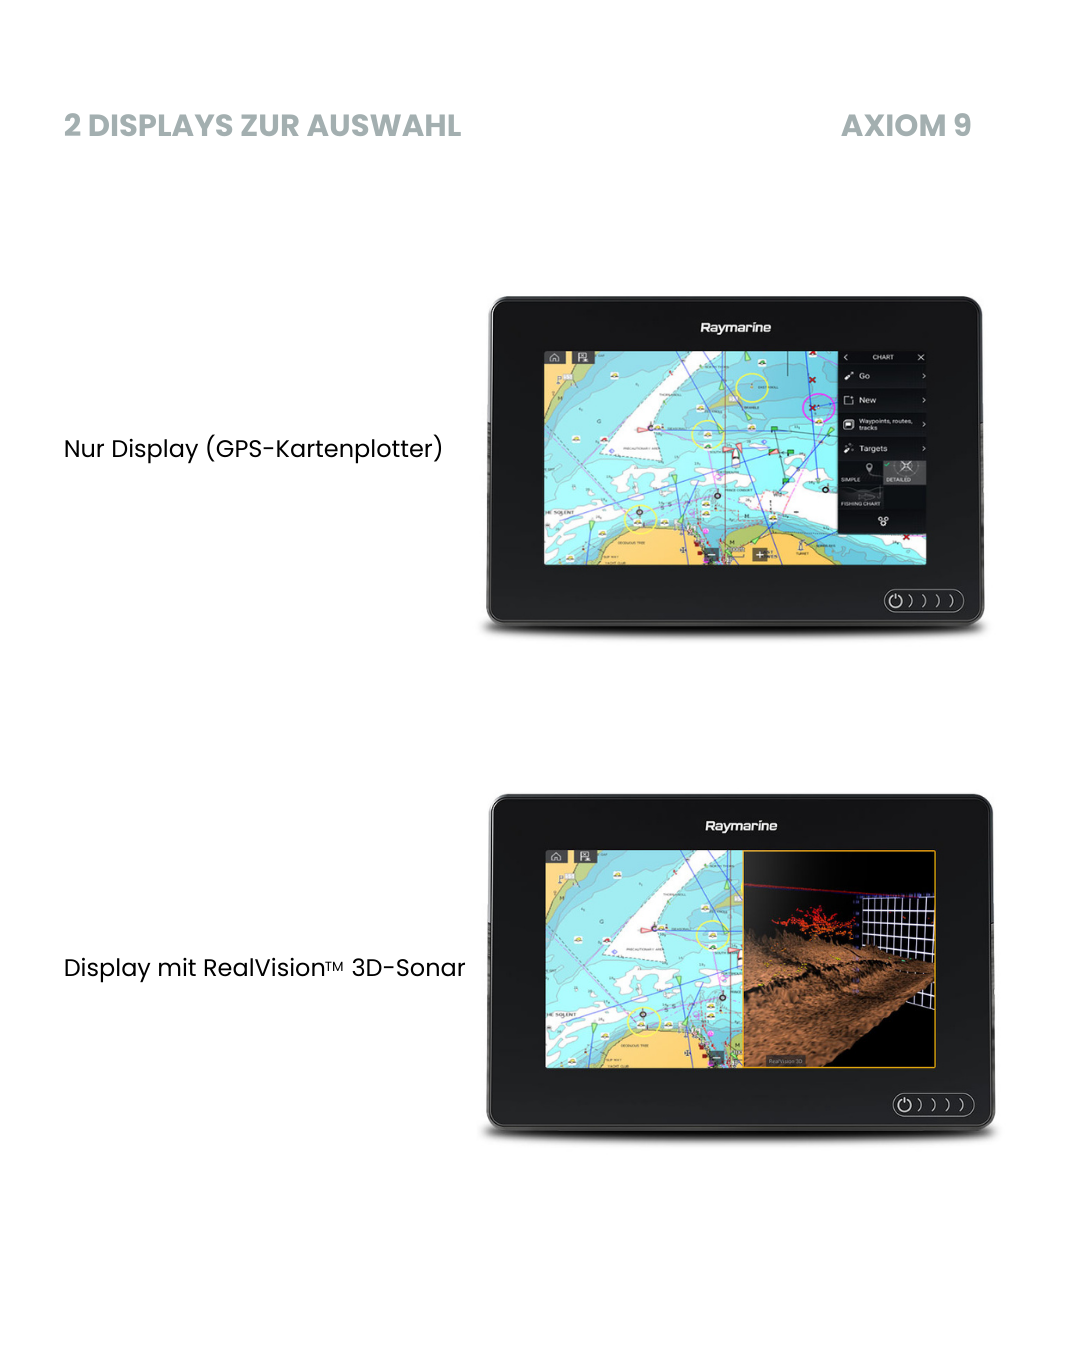 Raymarine Axiom 12 mit 2 Displays zur Auswahl. Nur Display mit GPS-Kartenplotter und Display mit RealVision 3D-Sonar.